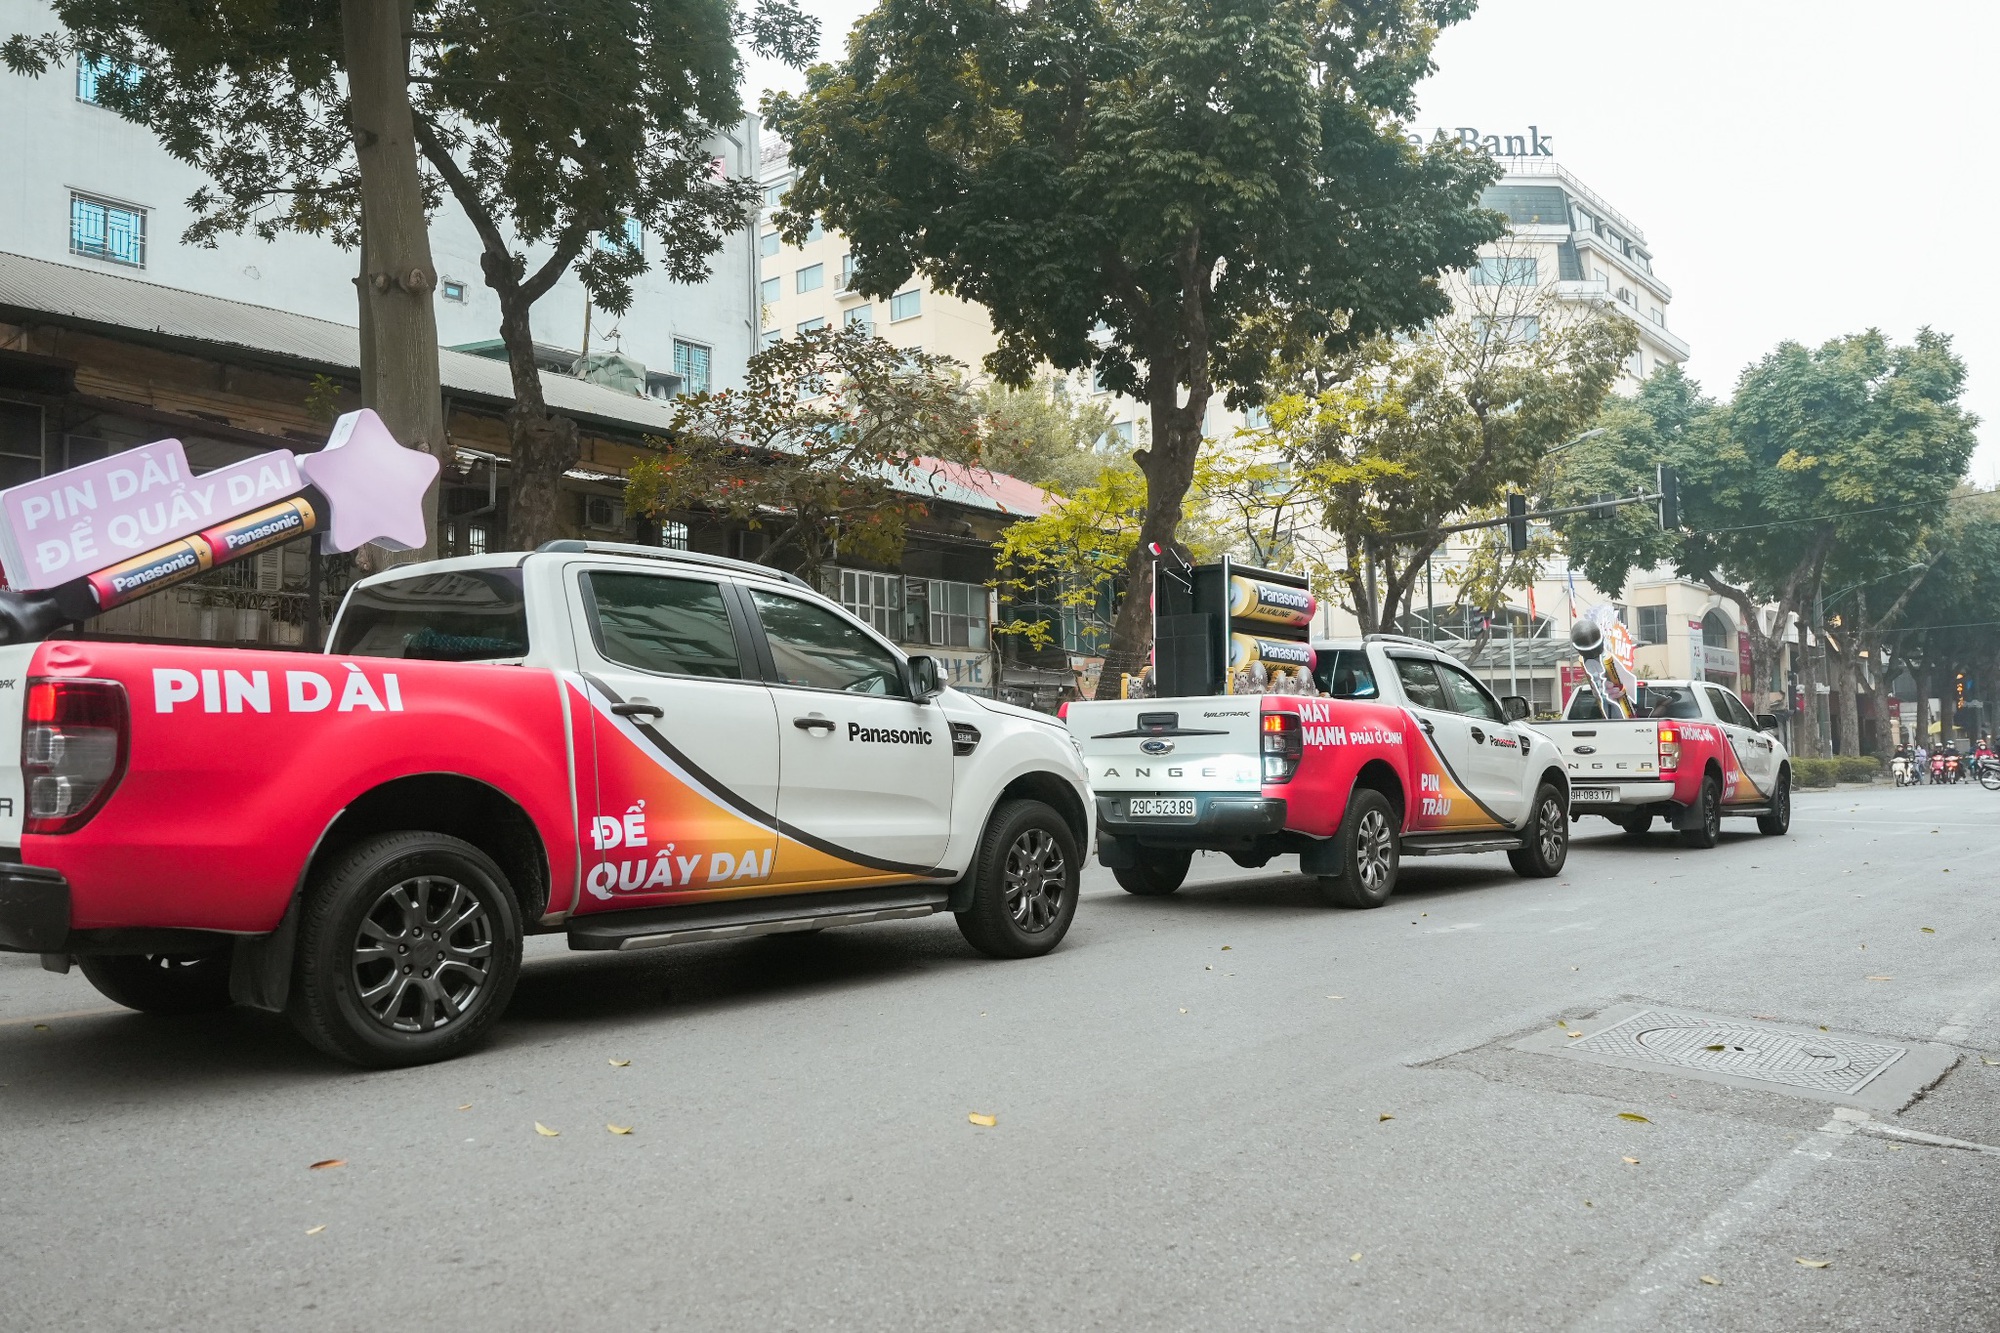 Giới trẻ “rần rần” check-in cùng đoàn xe lạ xuất hiện tại Hà Nội, TP.HCM – Làm đẹp